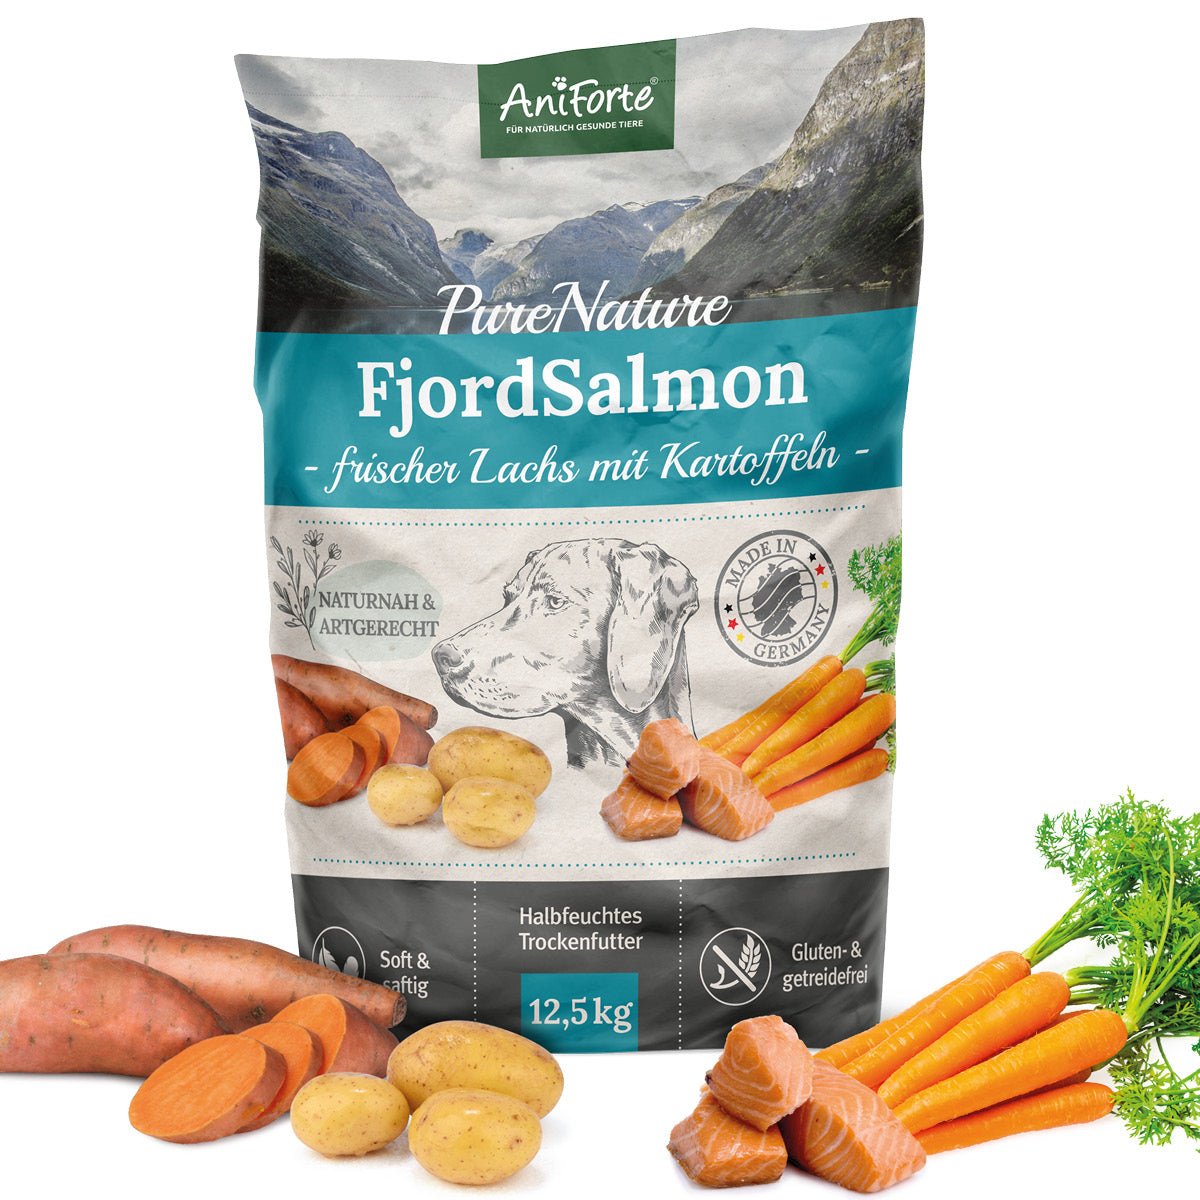 Trockenfutter FjordSalmon – "Frischer Lachs mit Kartoffeln" von AniForte